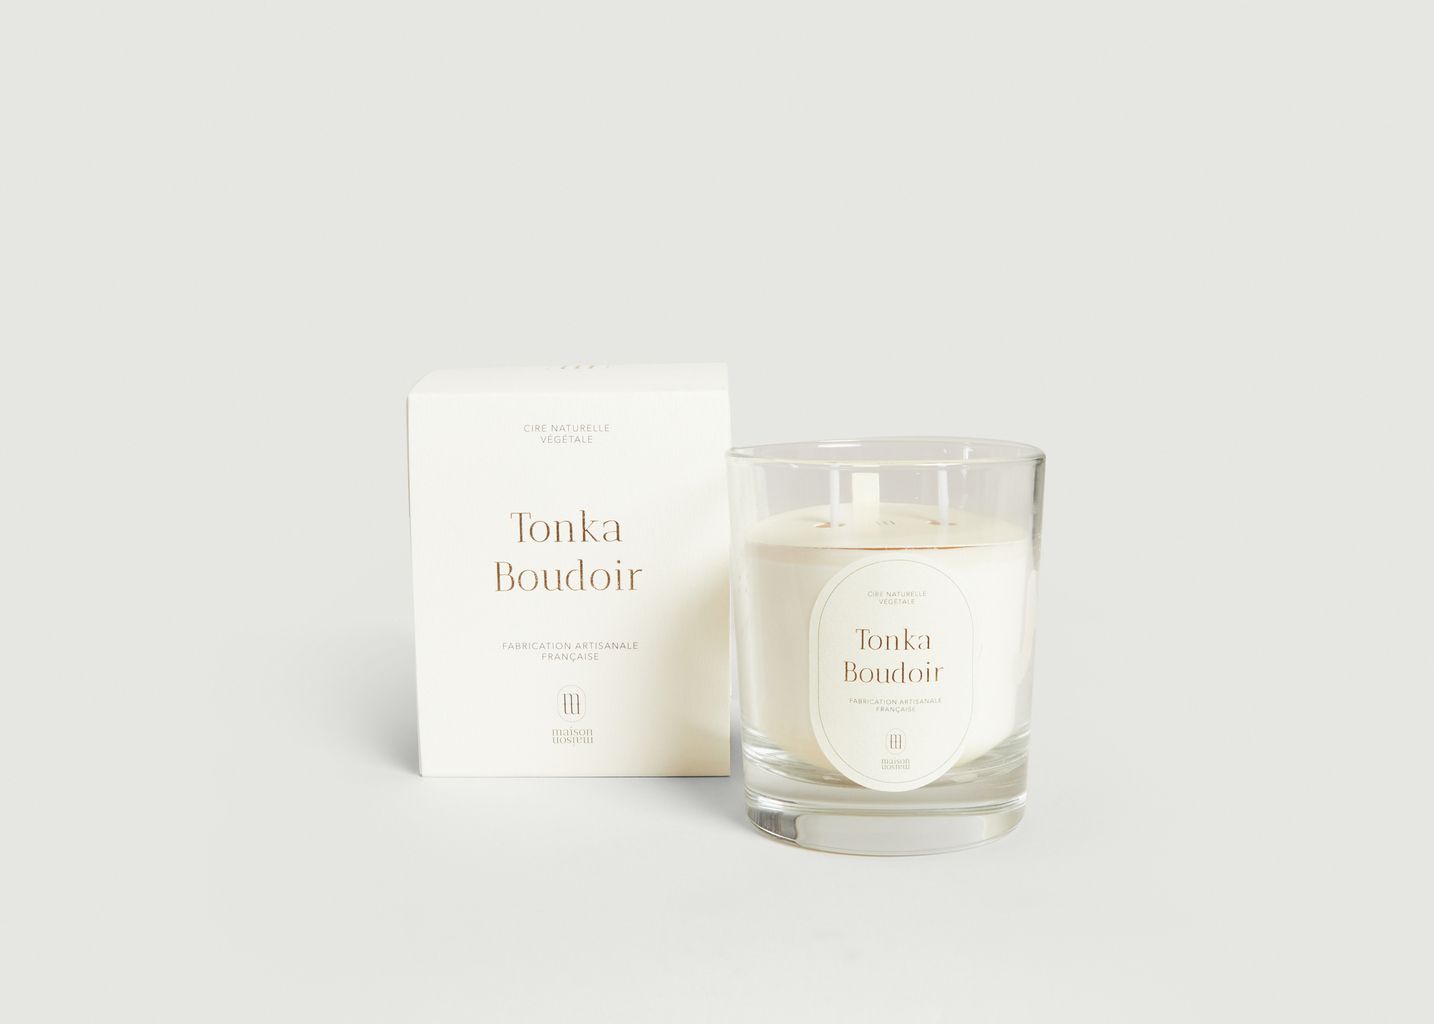 Tonka Boudoir scented candle 220g - Maison Maison Paris